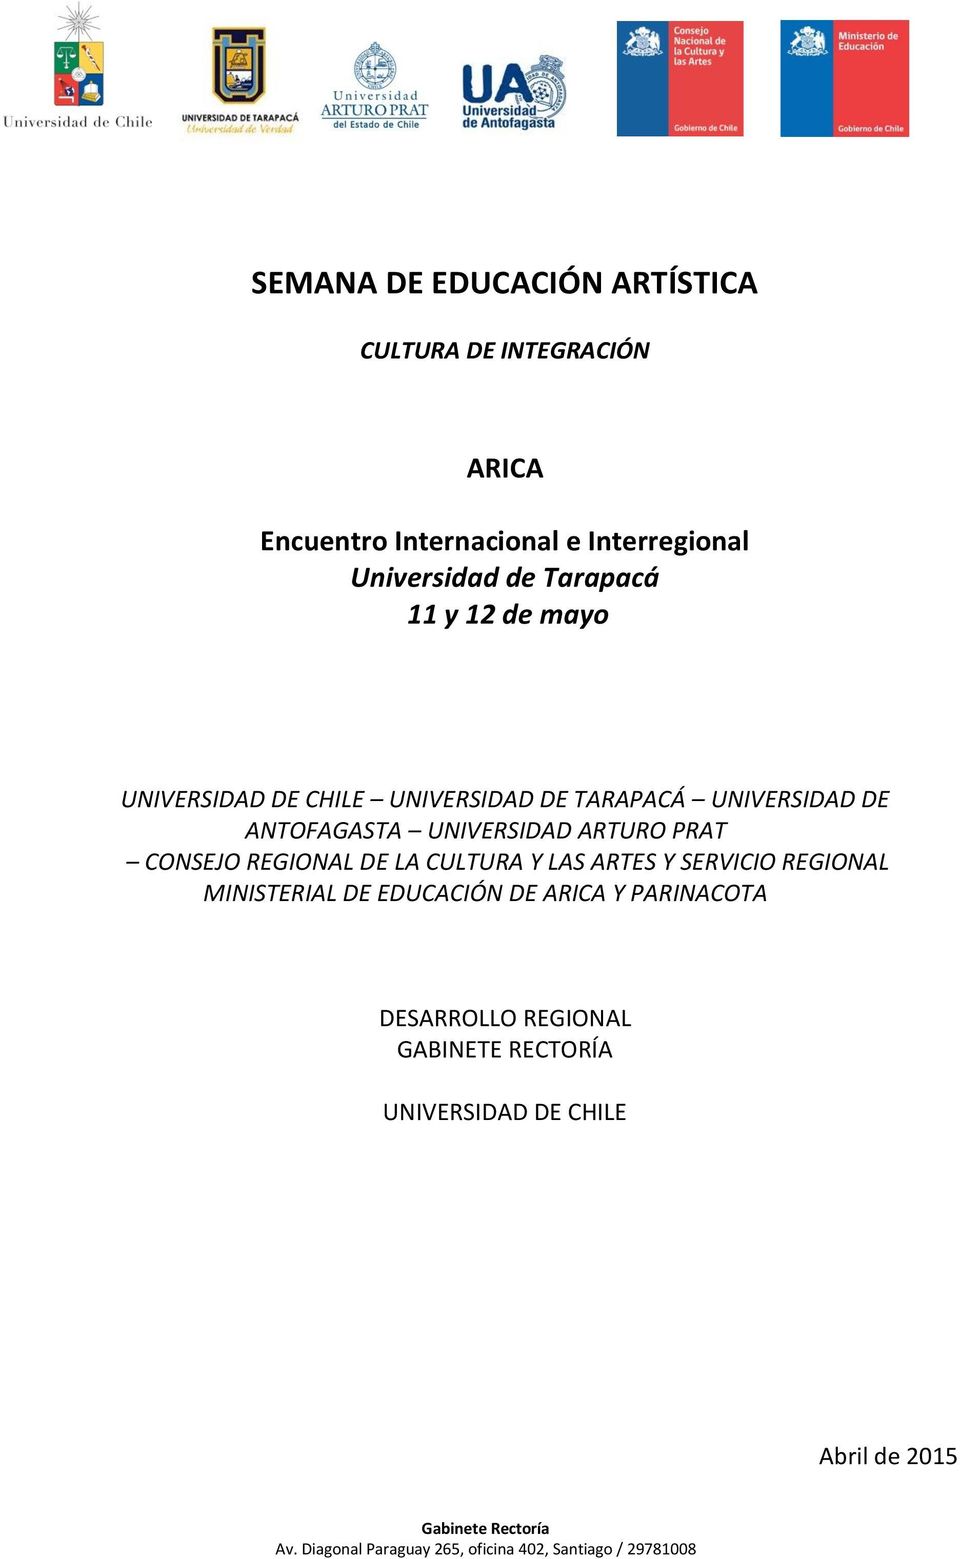 ANTOFAGASTA UNIVERSIDAD ARTURO PRAT CONSEJO REGIONAL DE LA CULTURA Y LAS ARTES Y SERVICIO REGIONAL